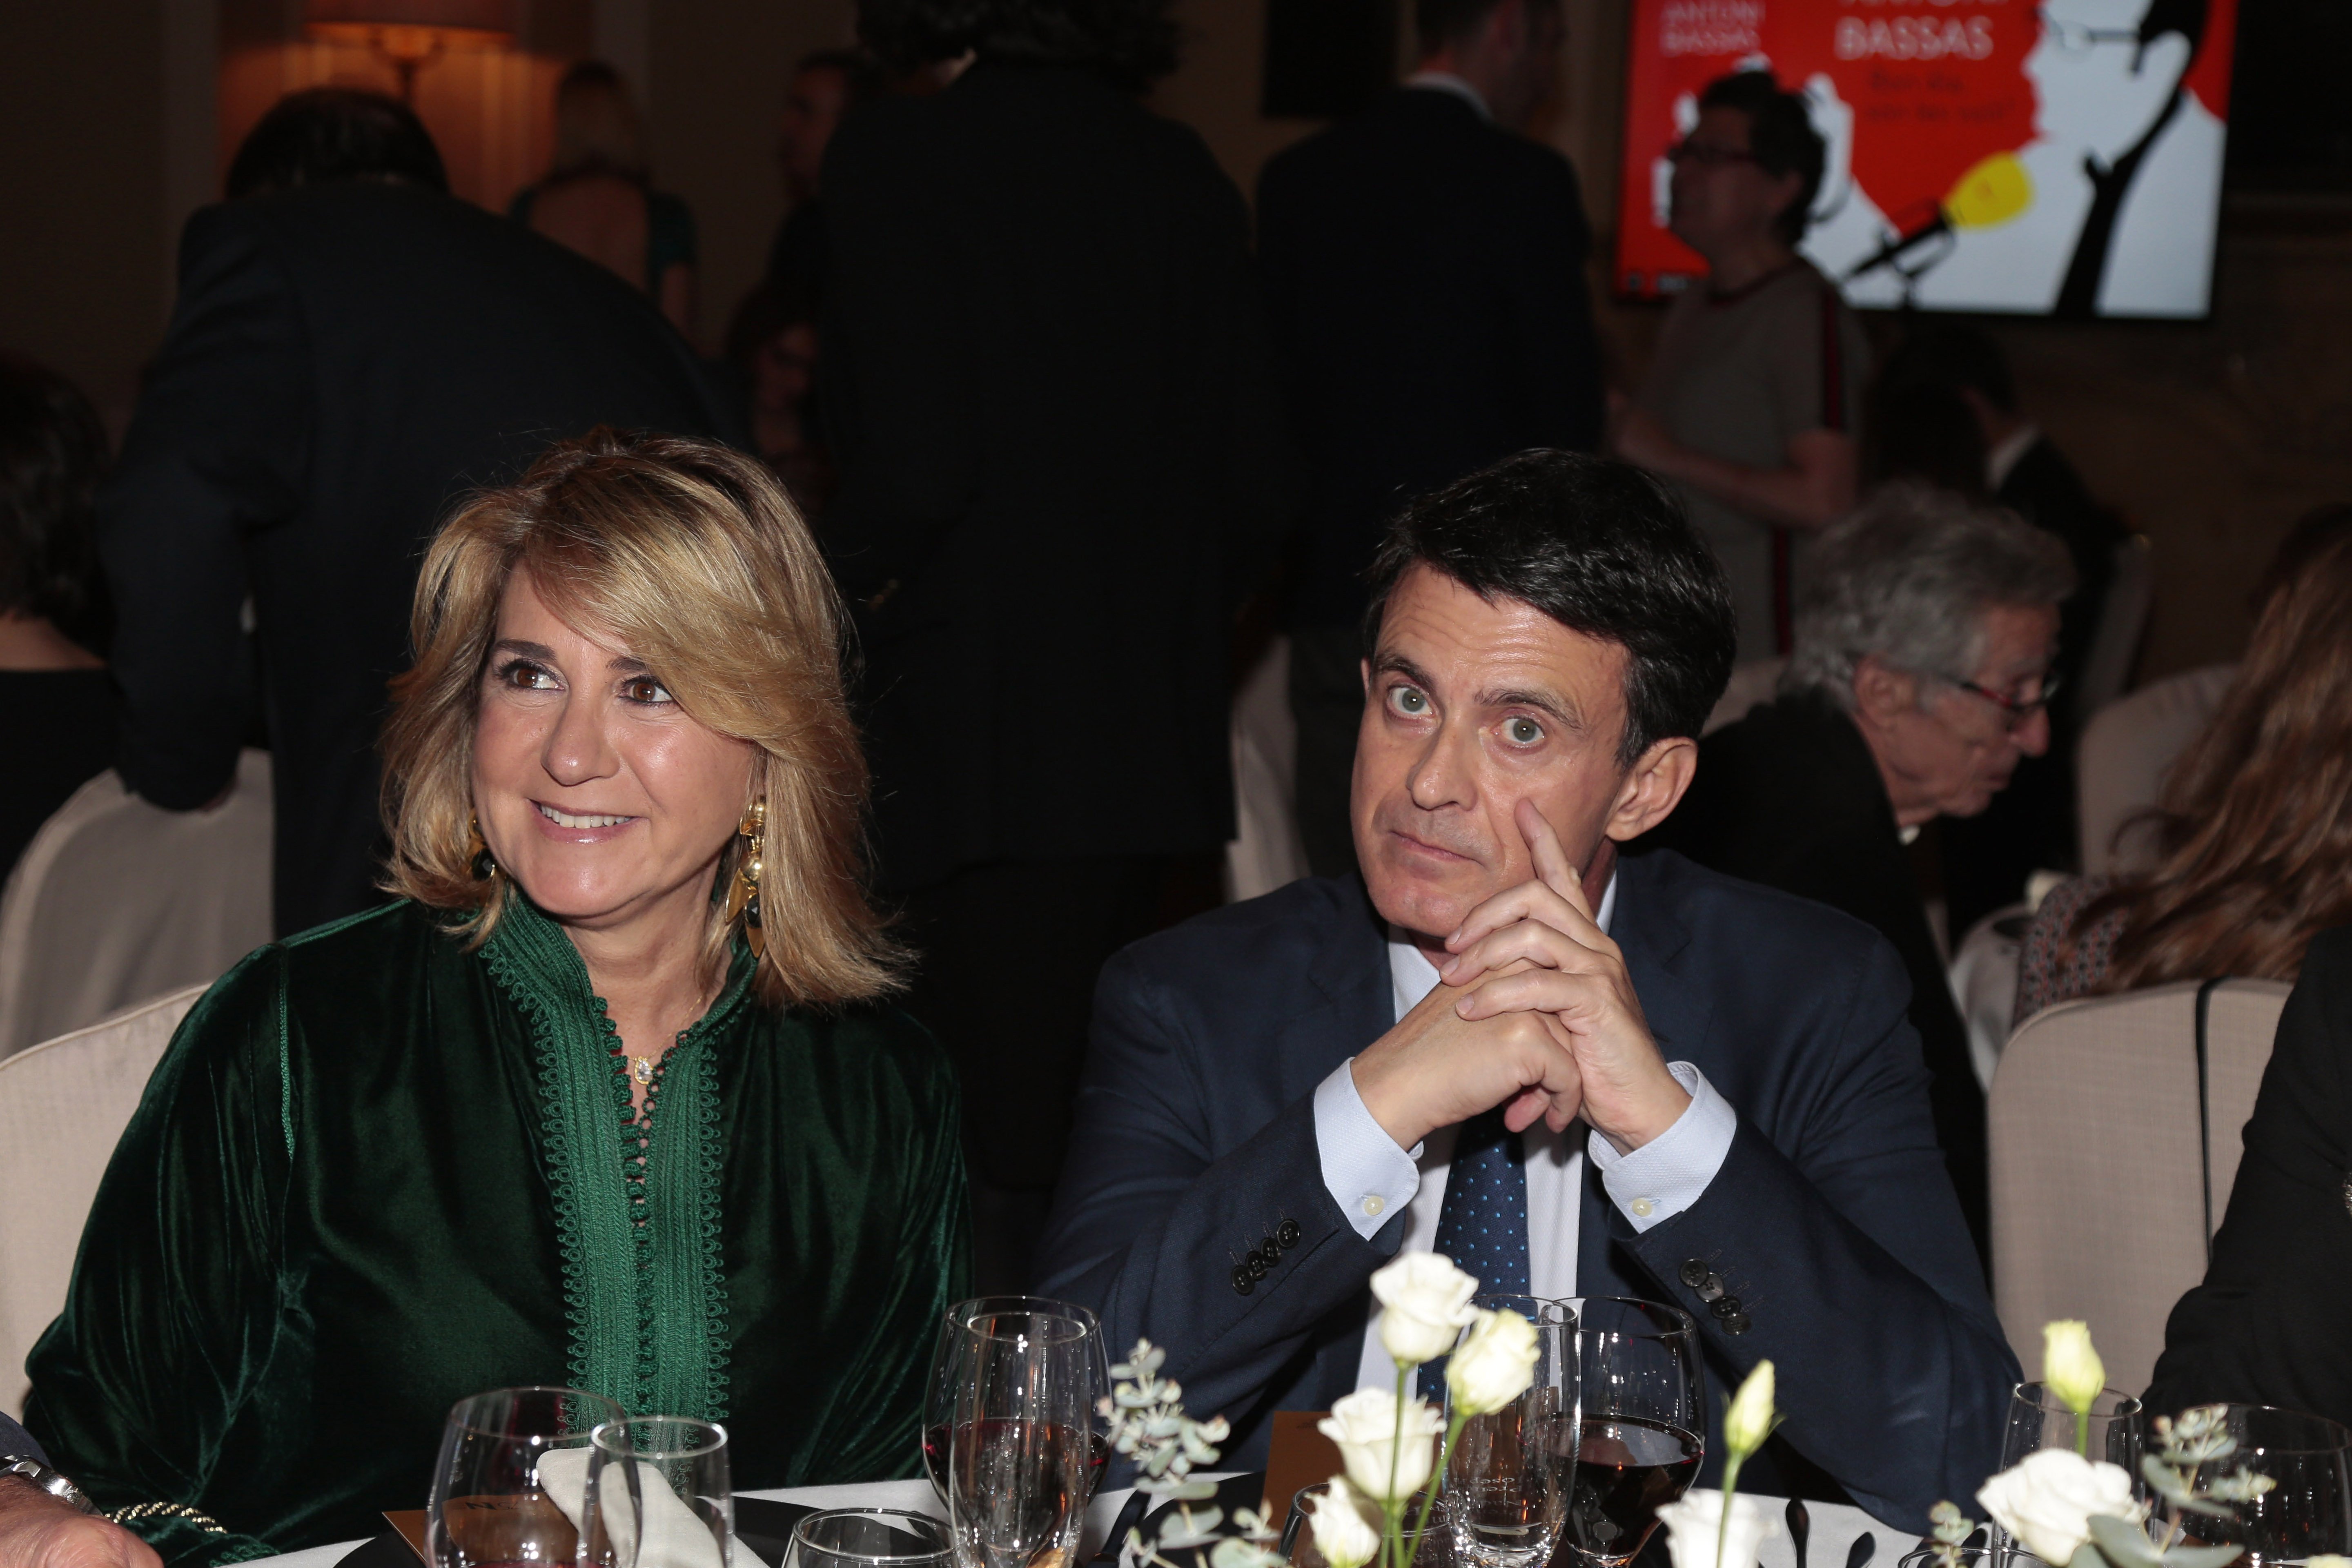 Susana Gallardo y Manuel Valls en 75° Premio Literario Nadal en Barcelona, en enero de 2019. | Foto: Getty Images